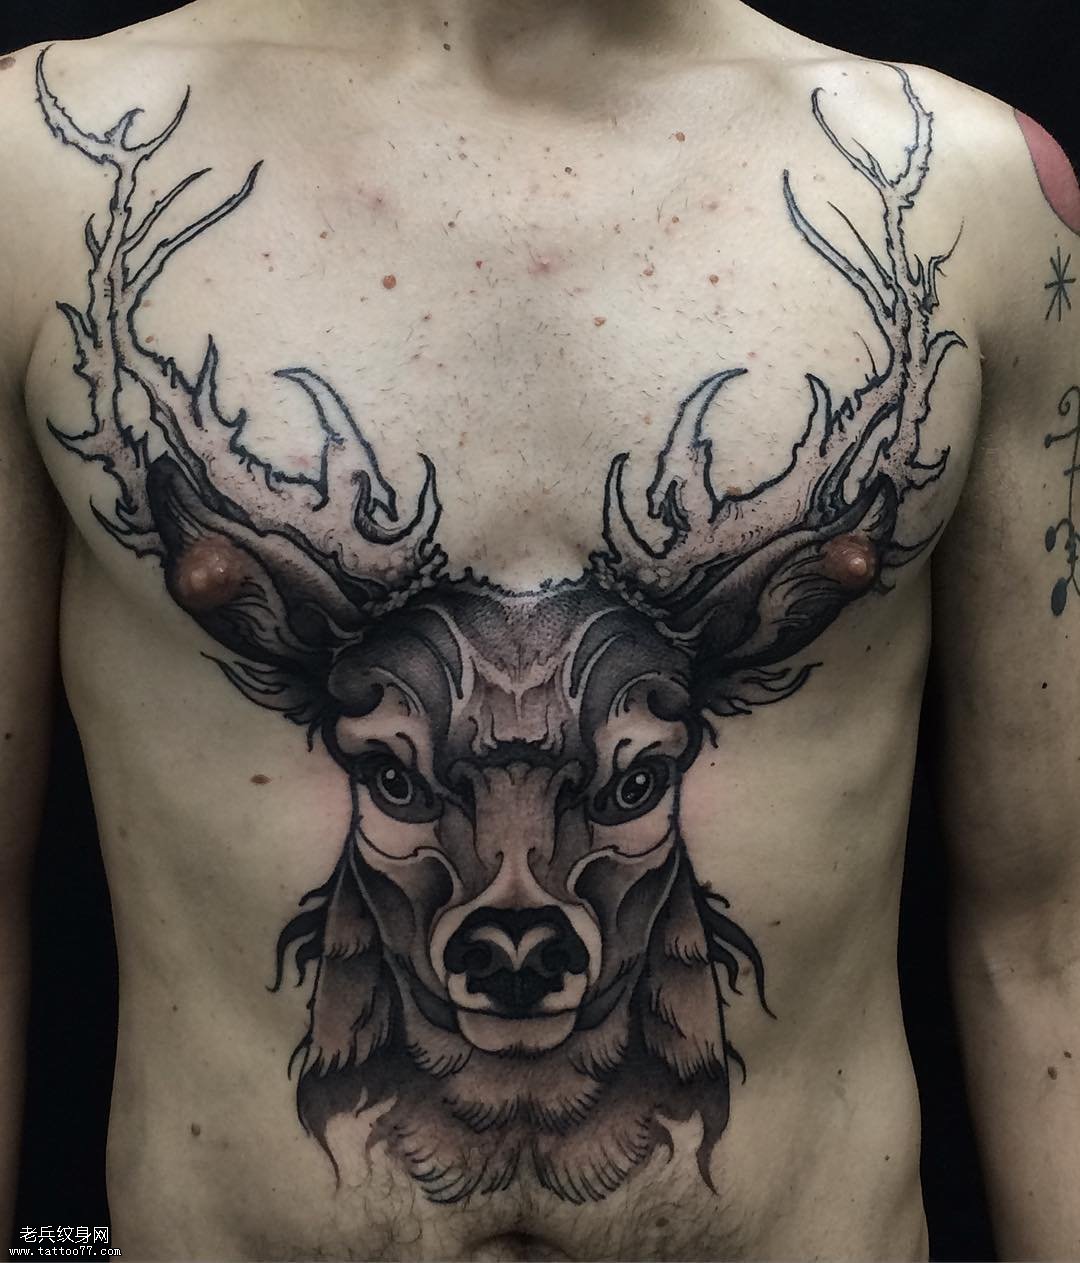 Pola tattoo Elk.